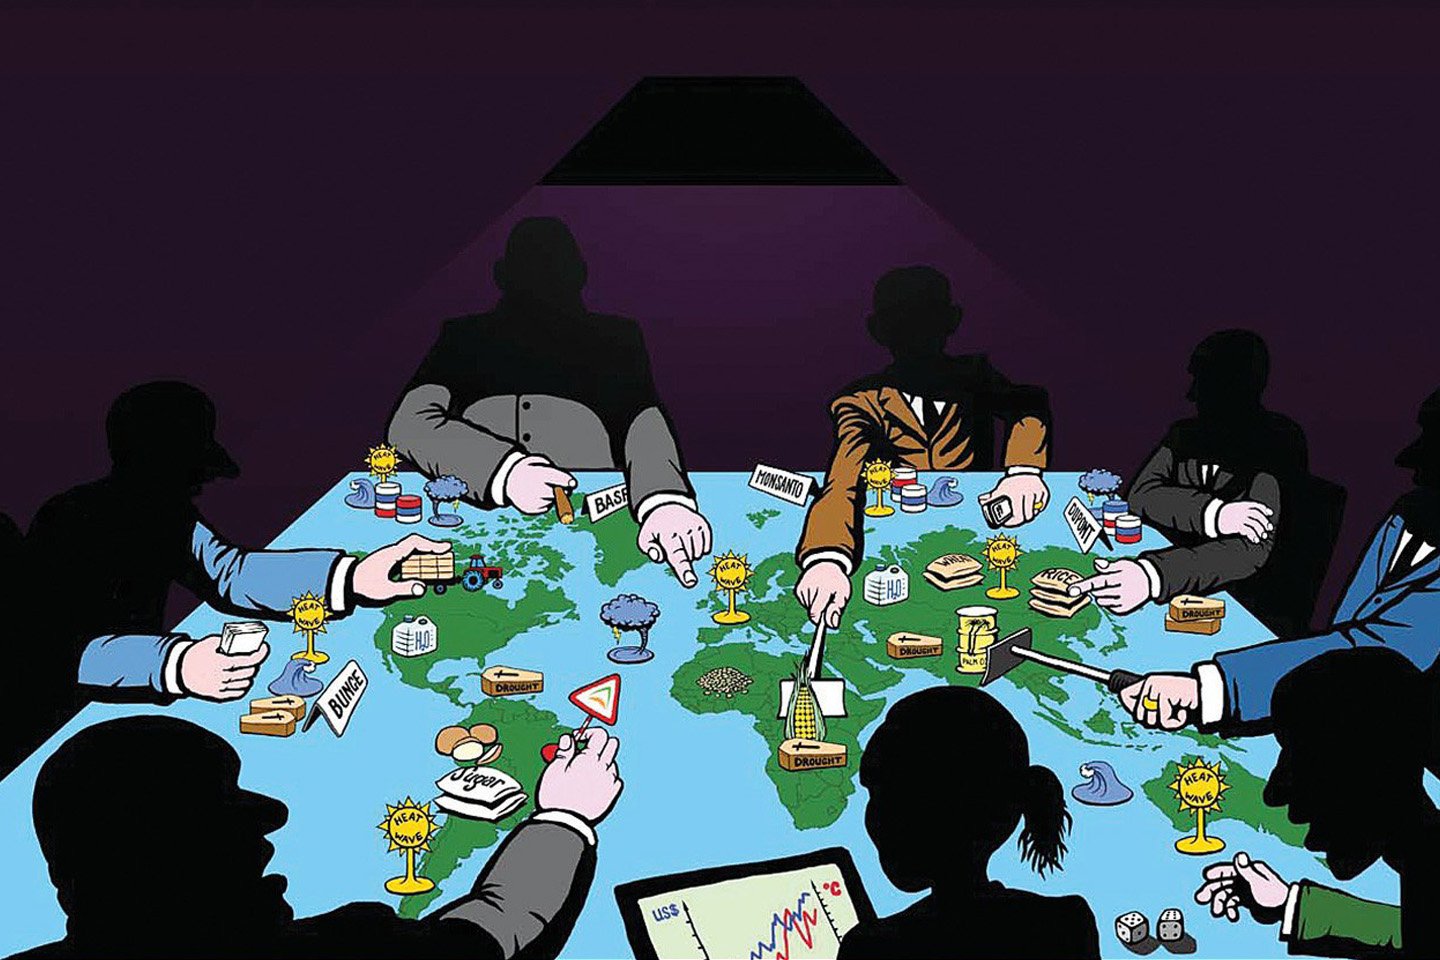 Игра против стран. Транснациональные корпорации карикатура. Глобализация карикатура. Корпорации против государства. Карикатура мировое правительство.